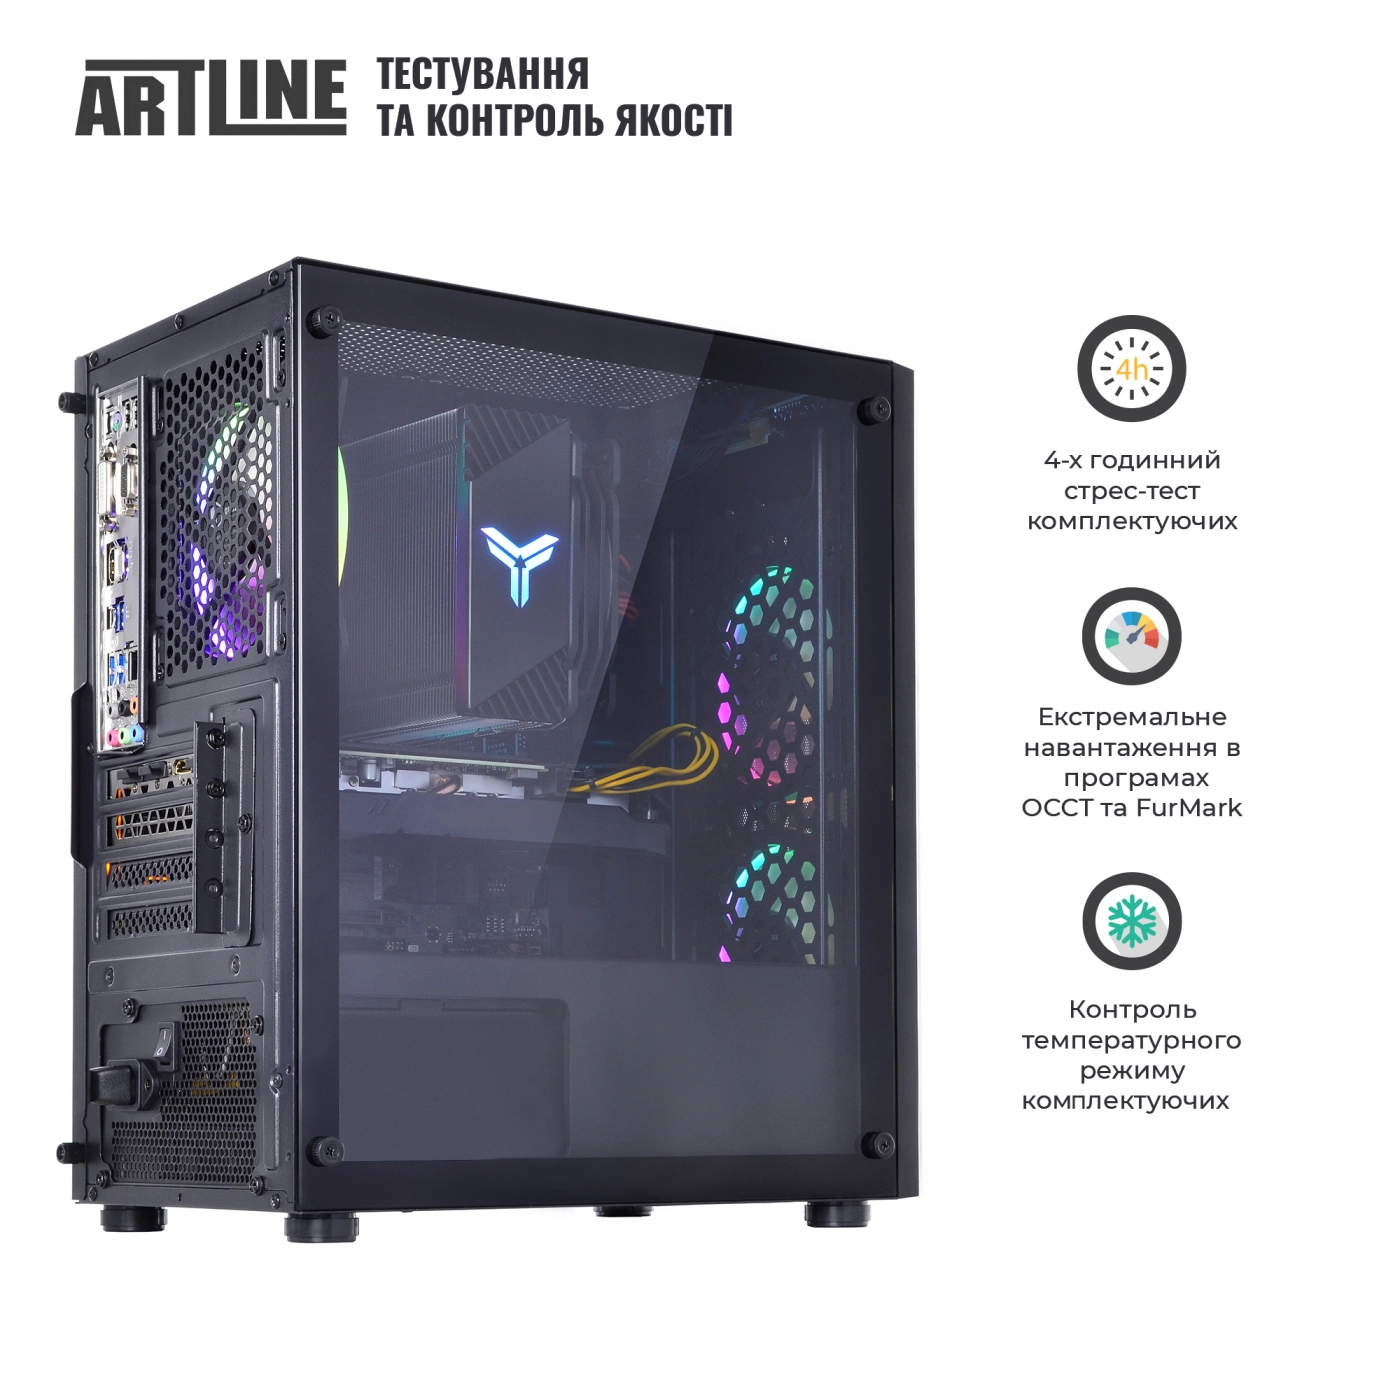 Купить Компьютер ARTLINE Gaming X71v38 - фото 9